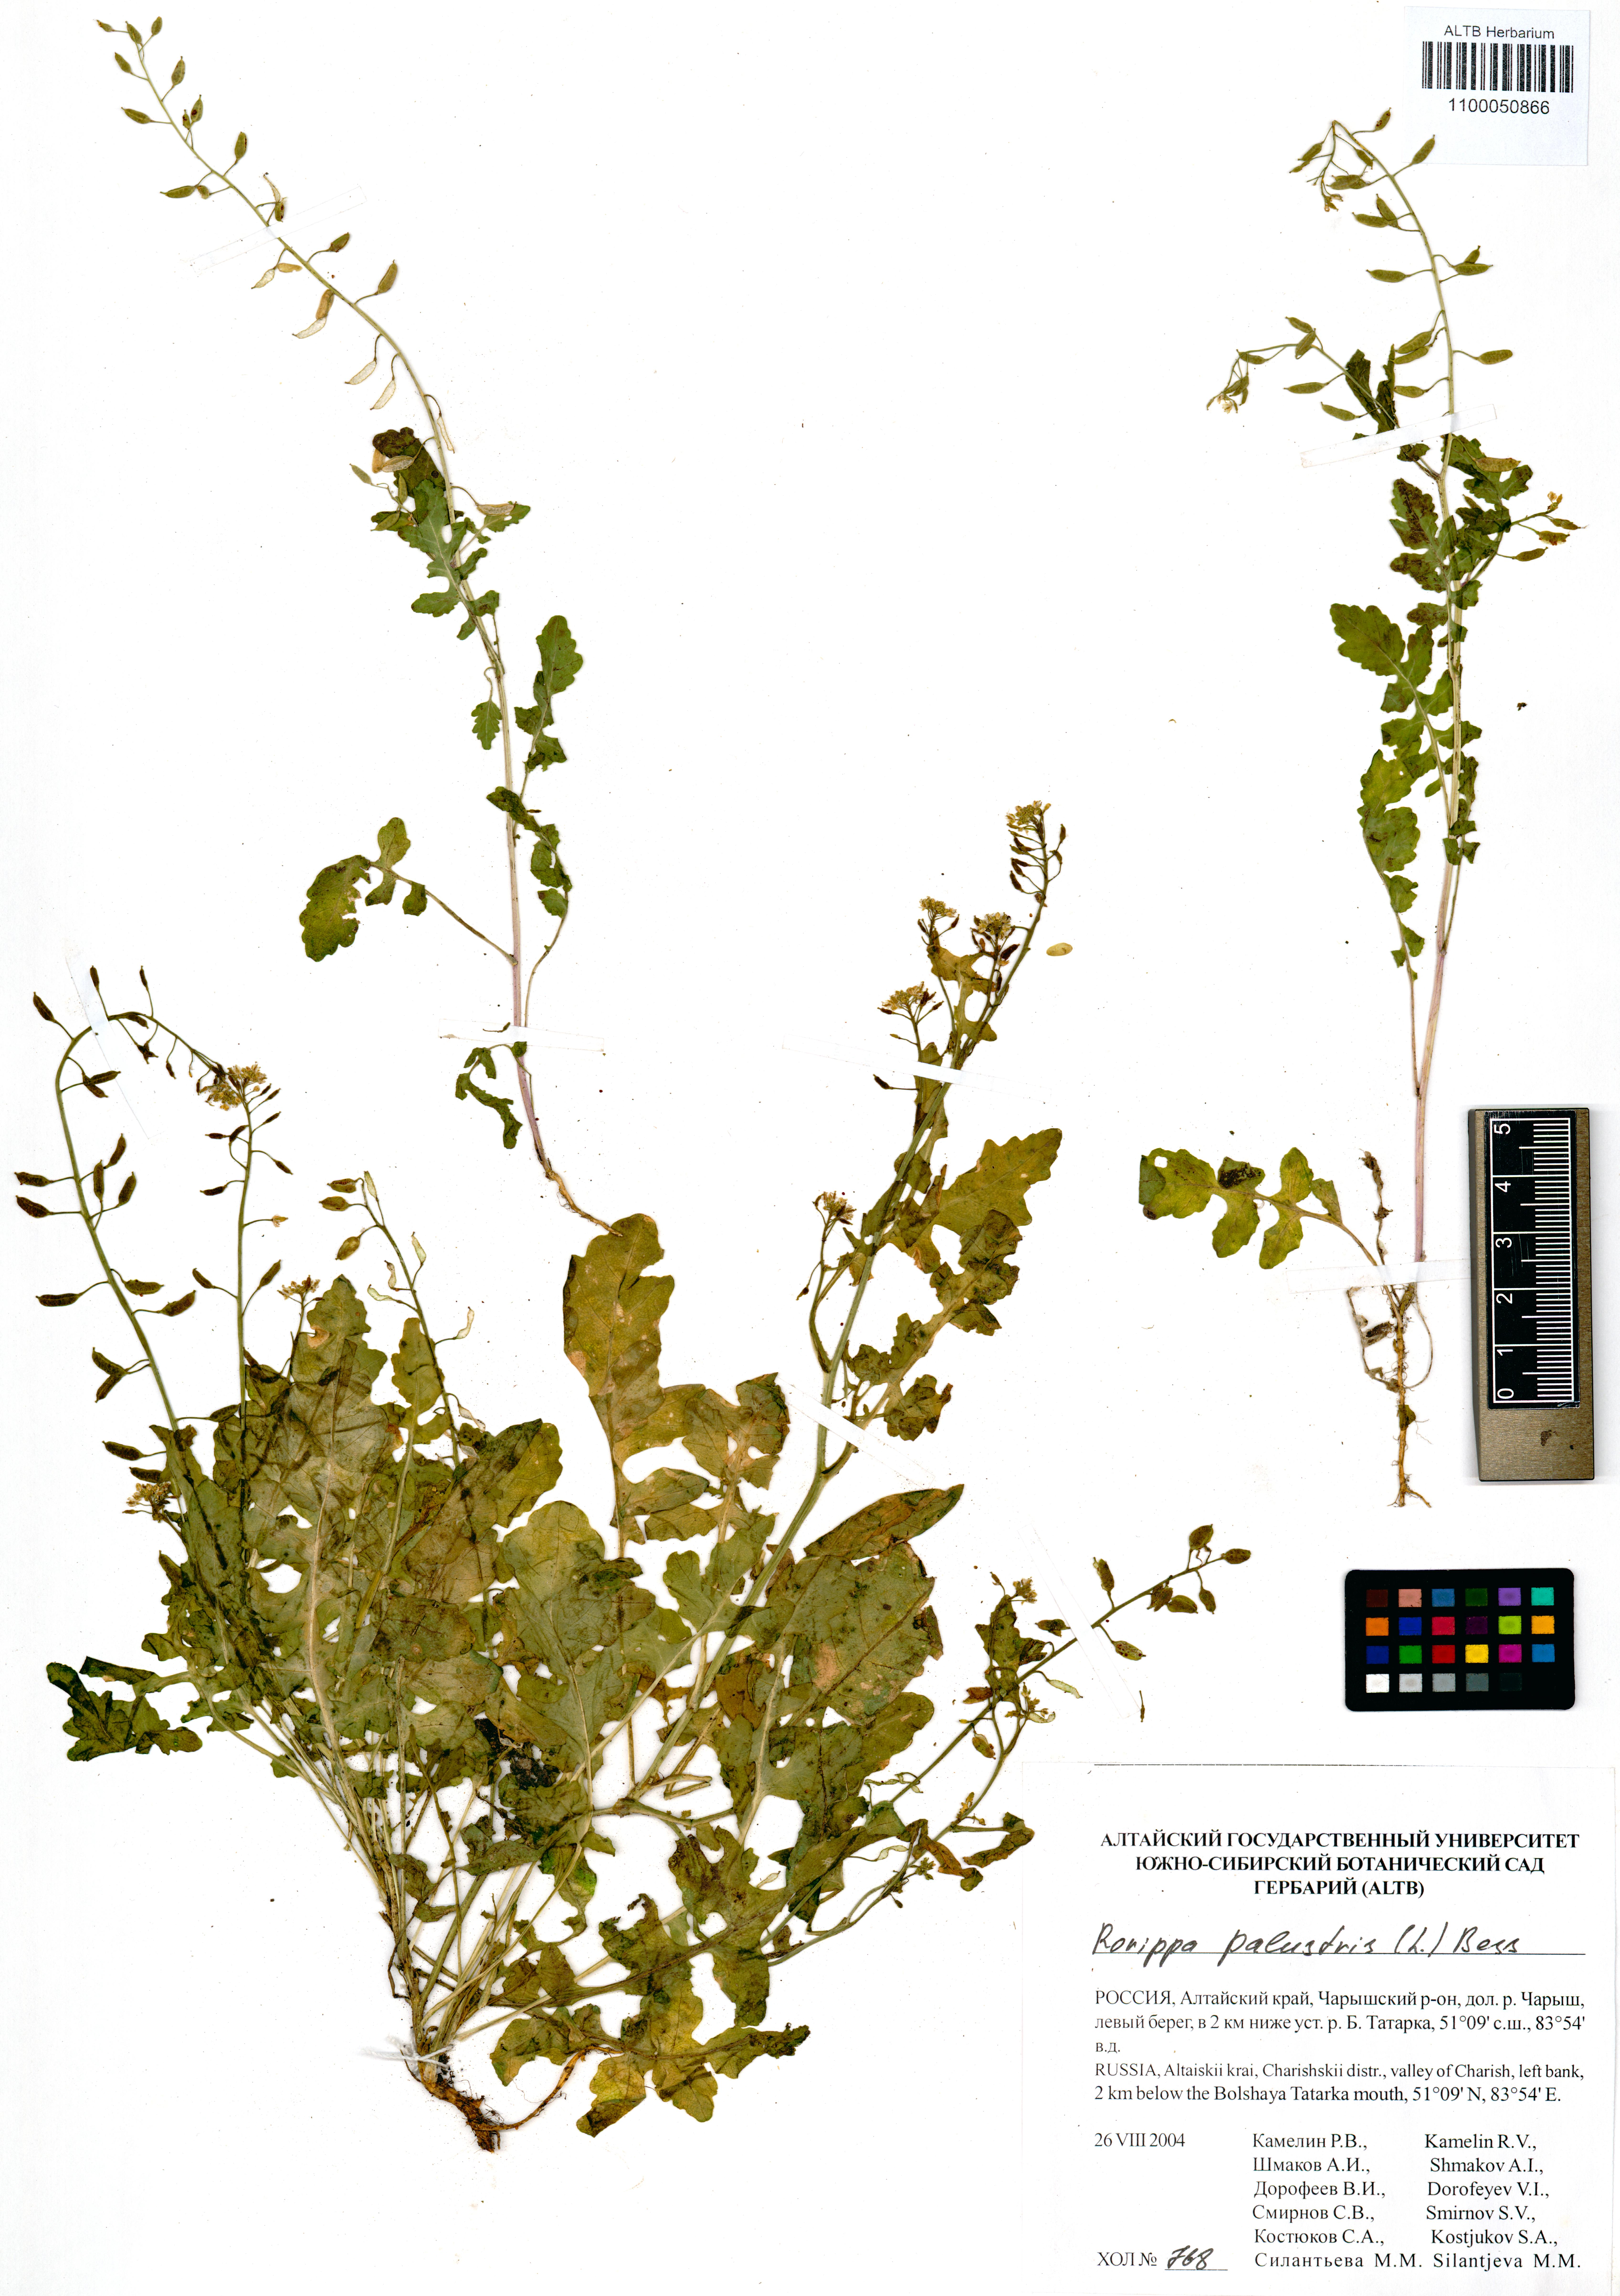 Rorippa palustris Besser